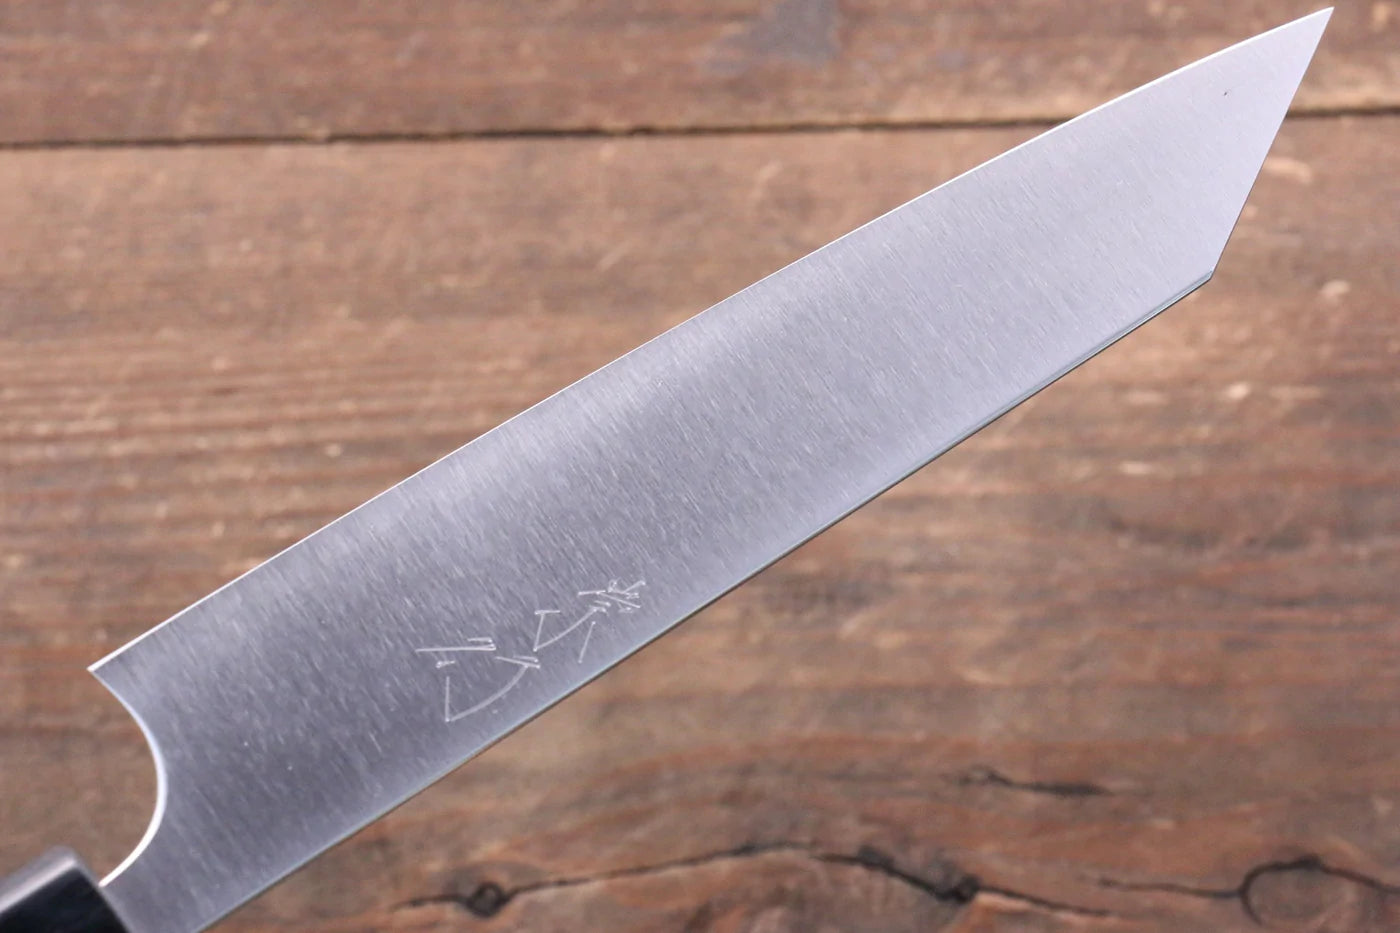 Shibata-Marke Takayuki Koutetsu-Stahl R2/SG2 Kleines Mehrzweckmesser Kleines japanisches Messer 150 mm